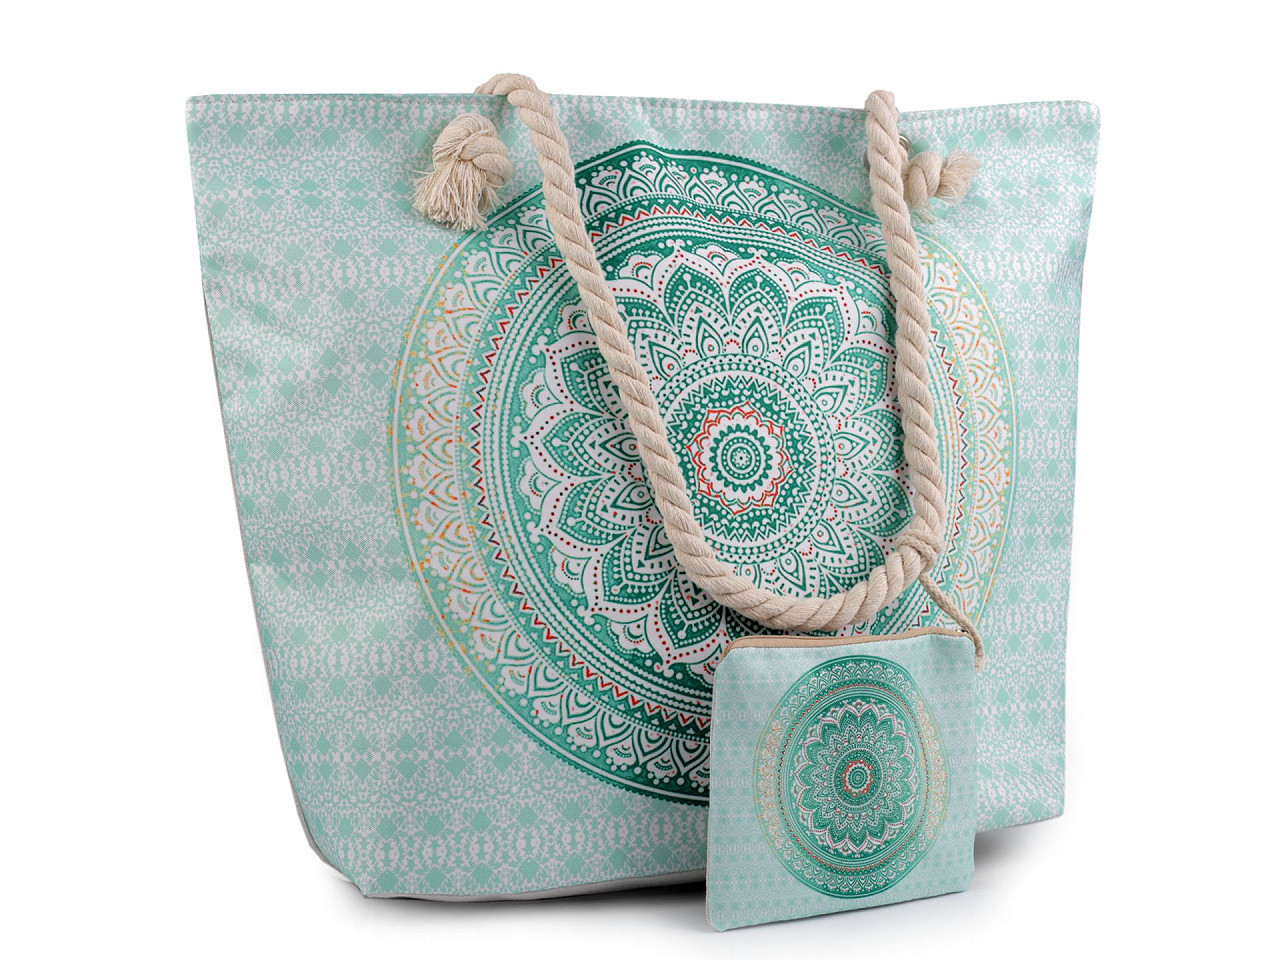 Letní / plážová taška mandala, paisley s taštičkou 39x50 cm, barva 7 zelená past.sv.